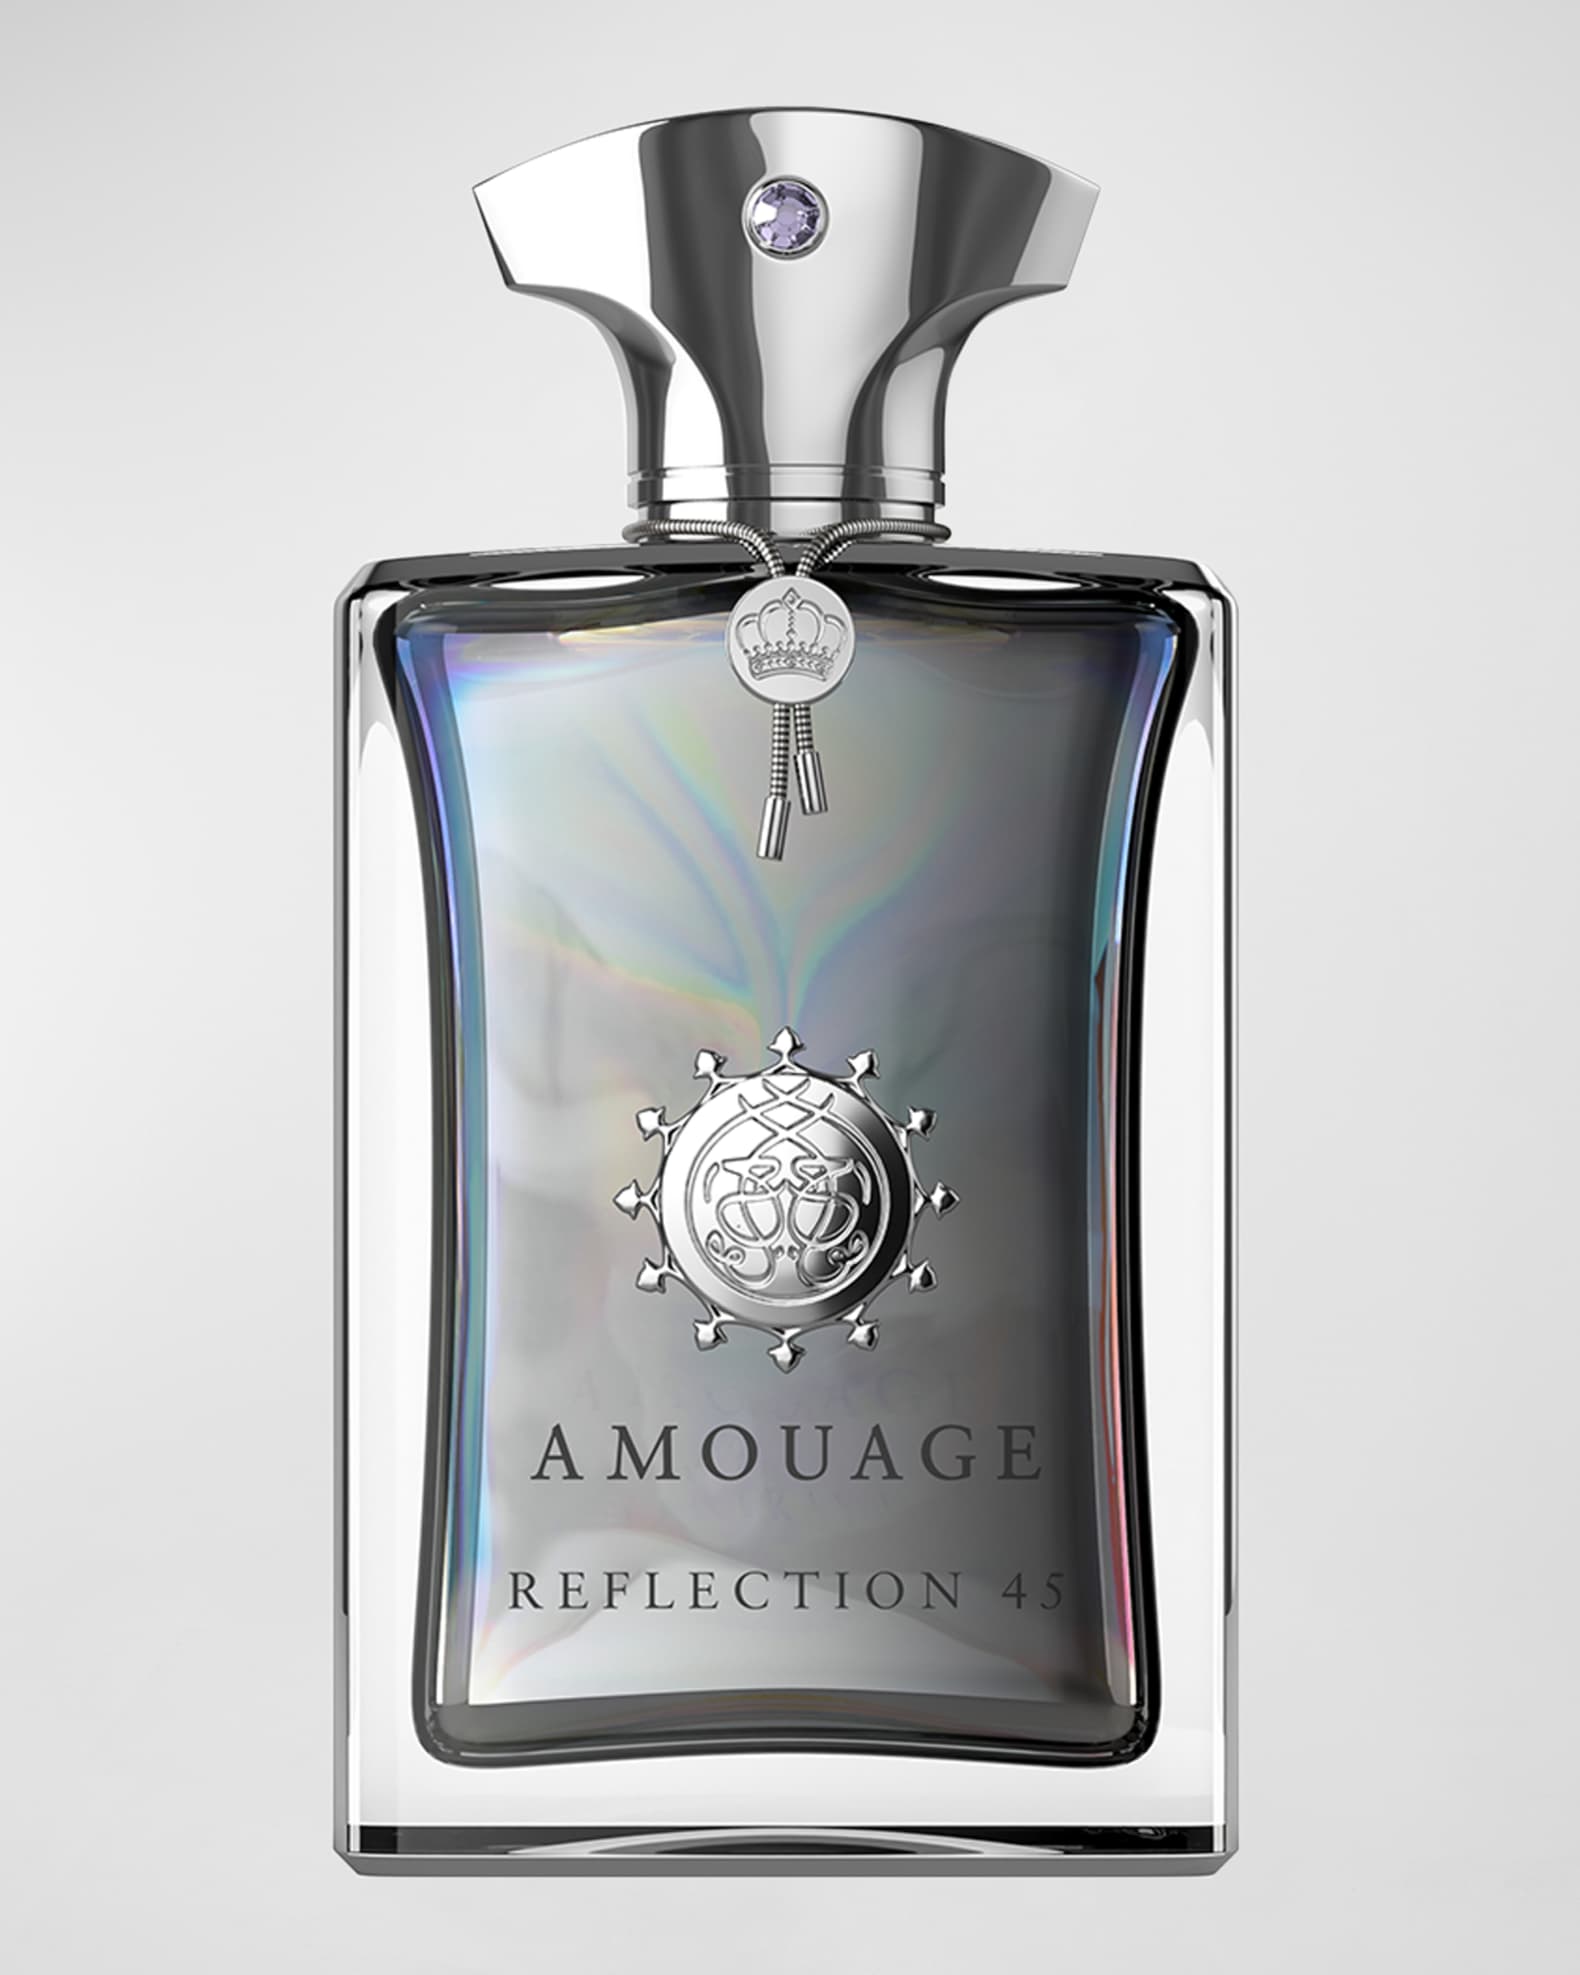 Amouage Reflection 45 Man Extrait de Parfum, 100 ml